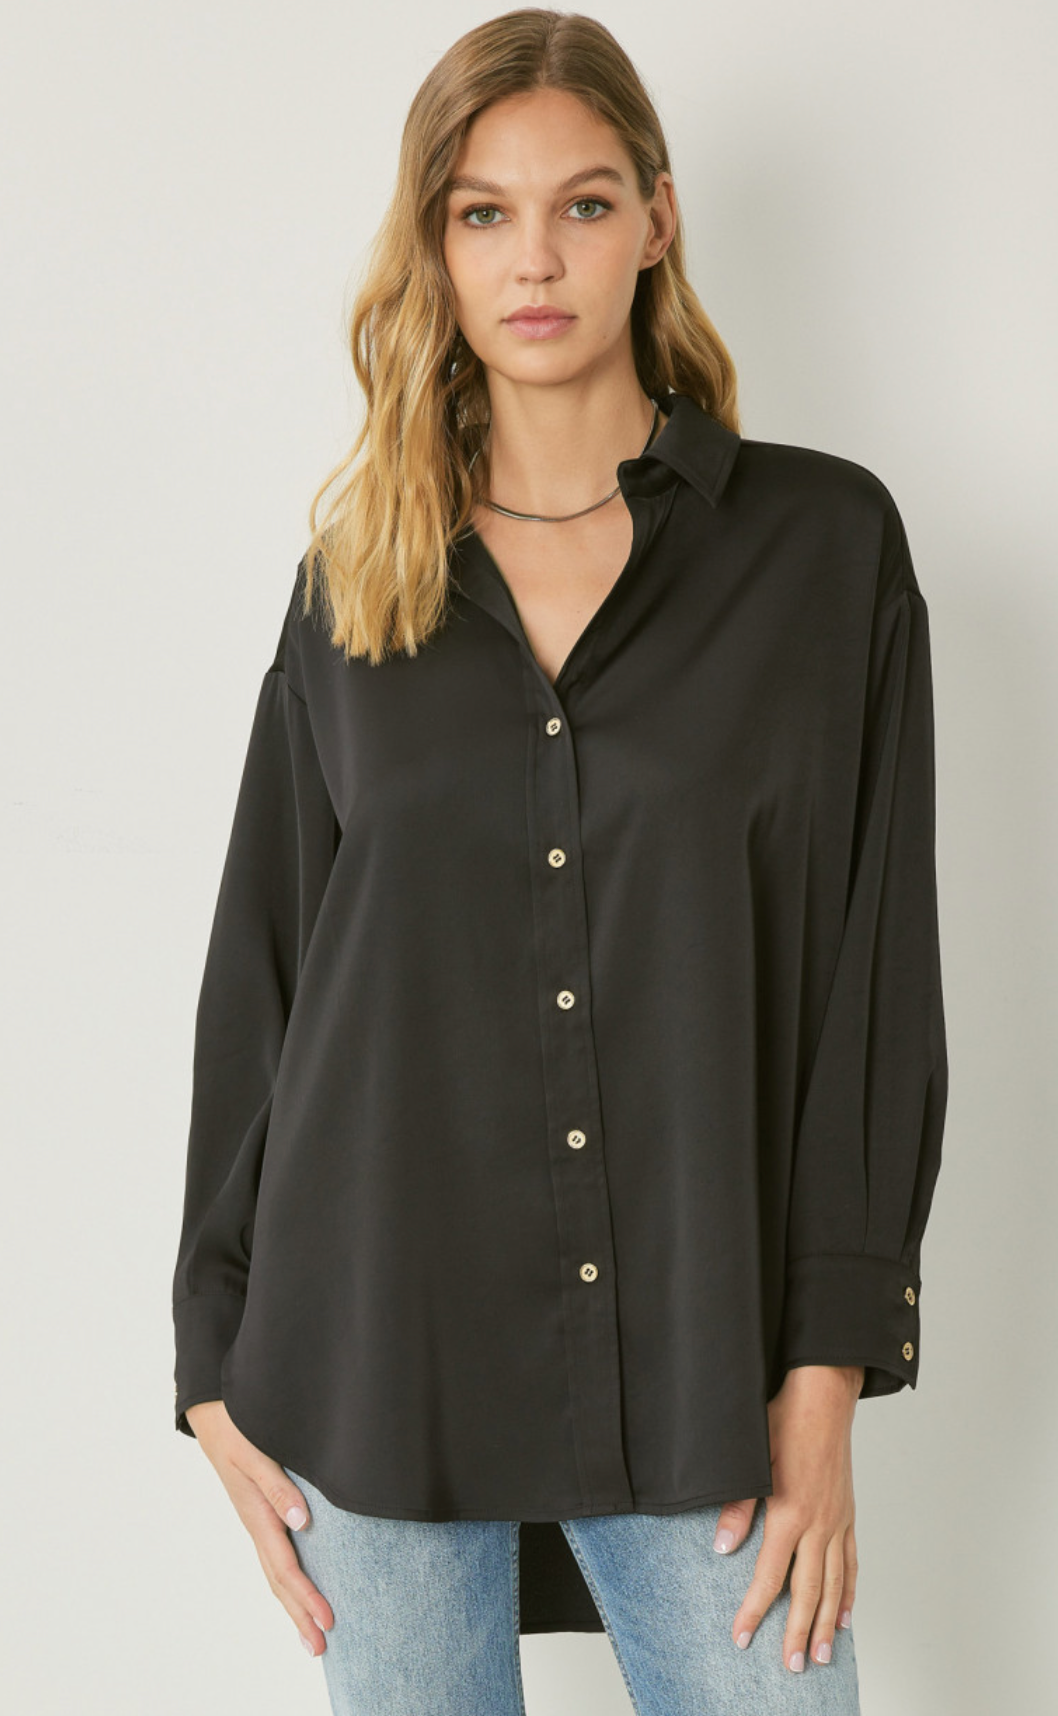 Amanda Silky Shine Button Up Woven Blouse - Black